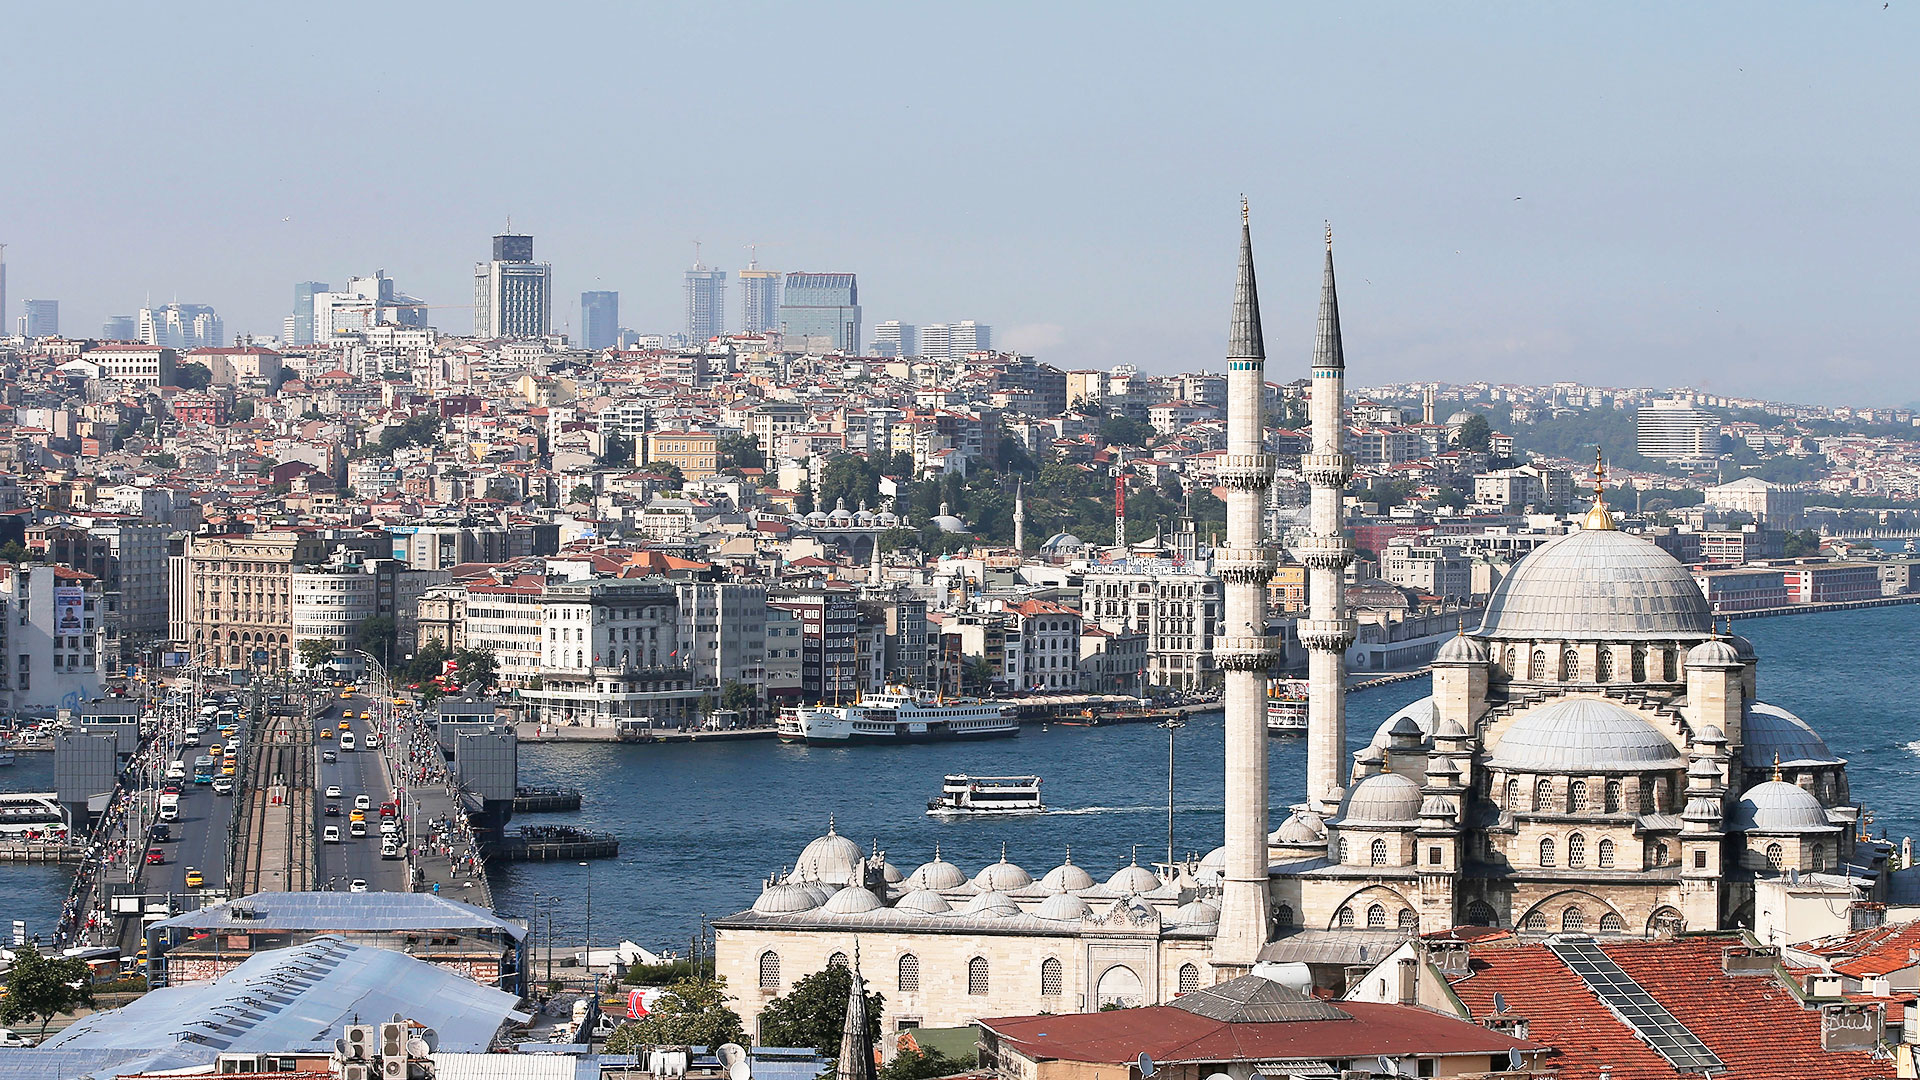 Κορυφαίος Τούρκος σεισμολόγος: “SOS για τρεις πόλεις στις οποίες θα γίνει μεγάλος σεισμός πριν από την Κωνσταντινούπολη” (video)